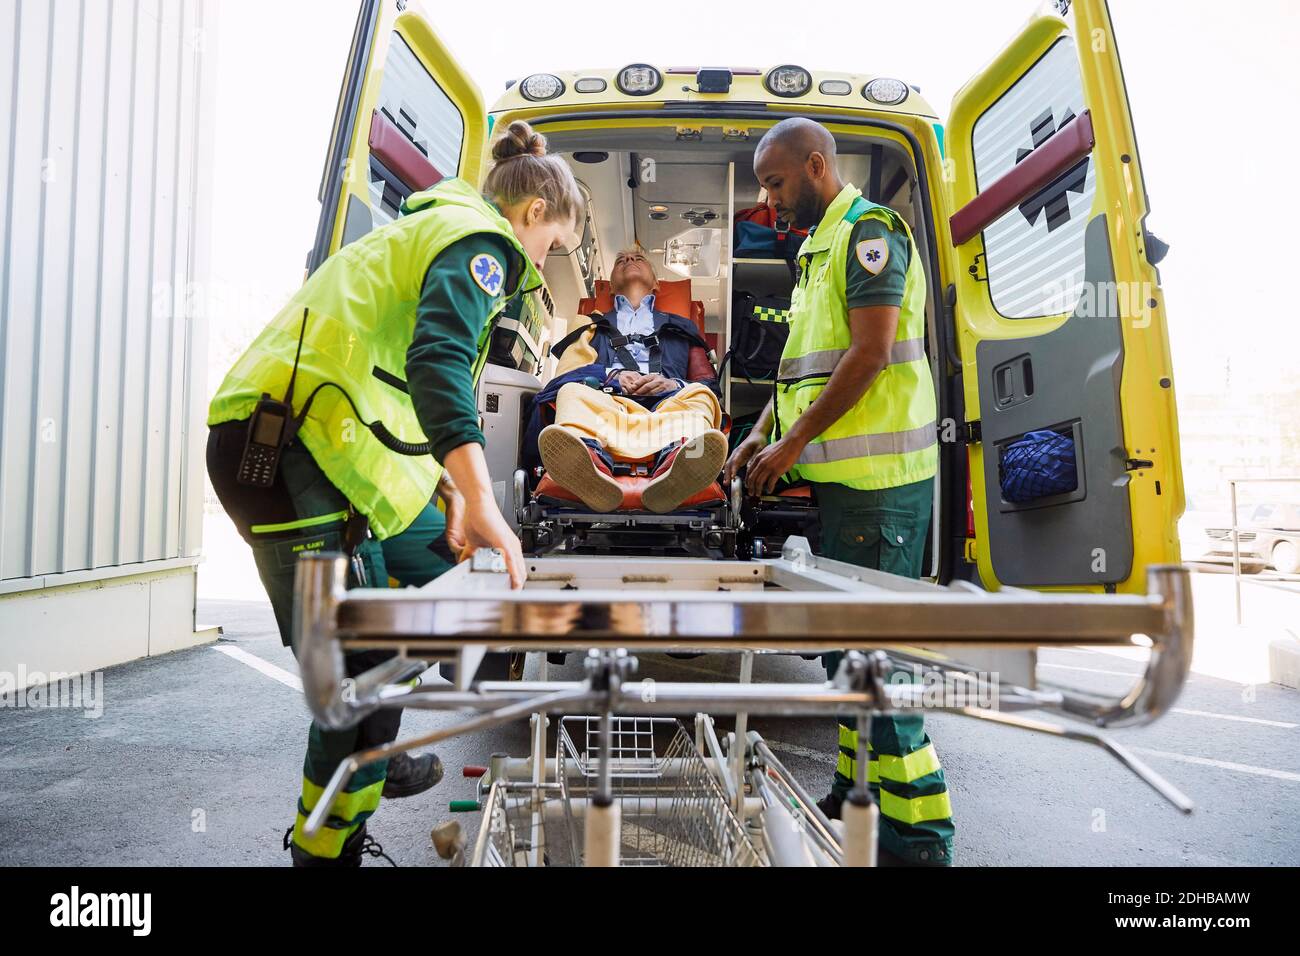 Trabajadores de la salud que sacan a un paciente maduro de una ambulancia en una camilla del hospital Foto de stock